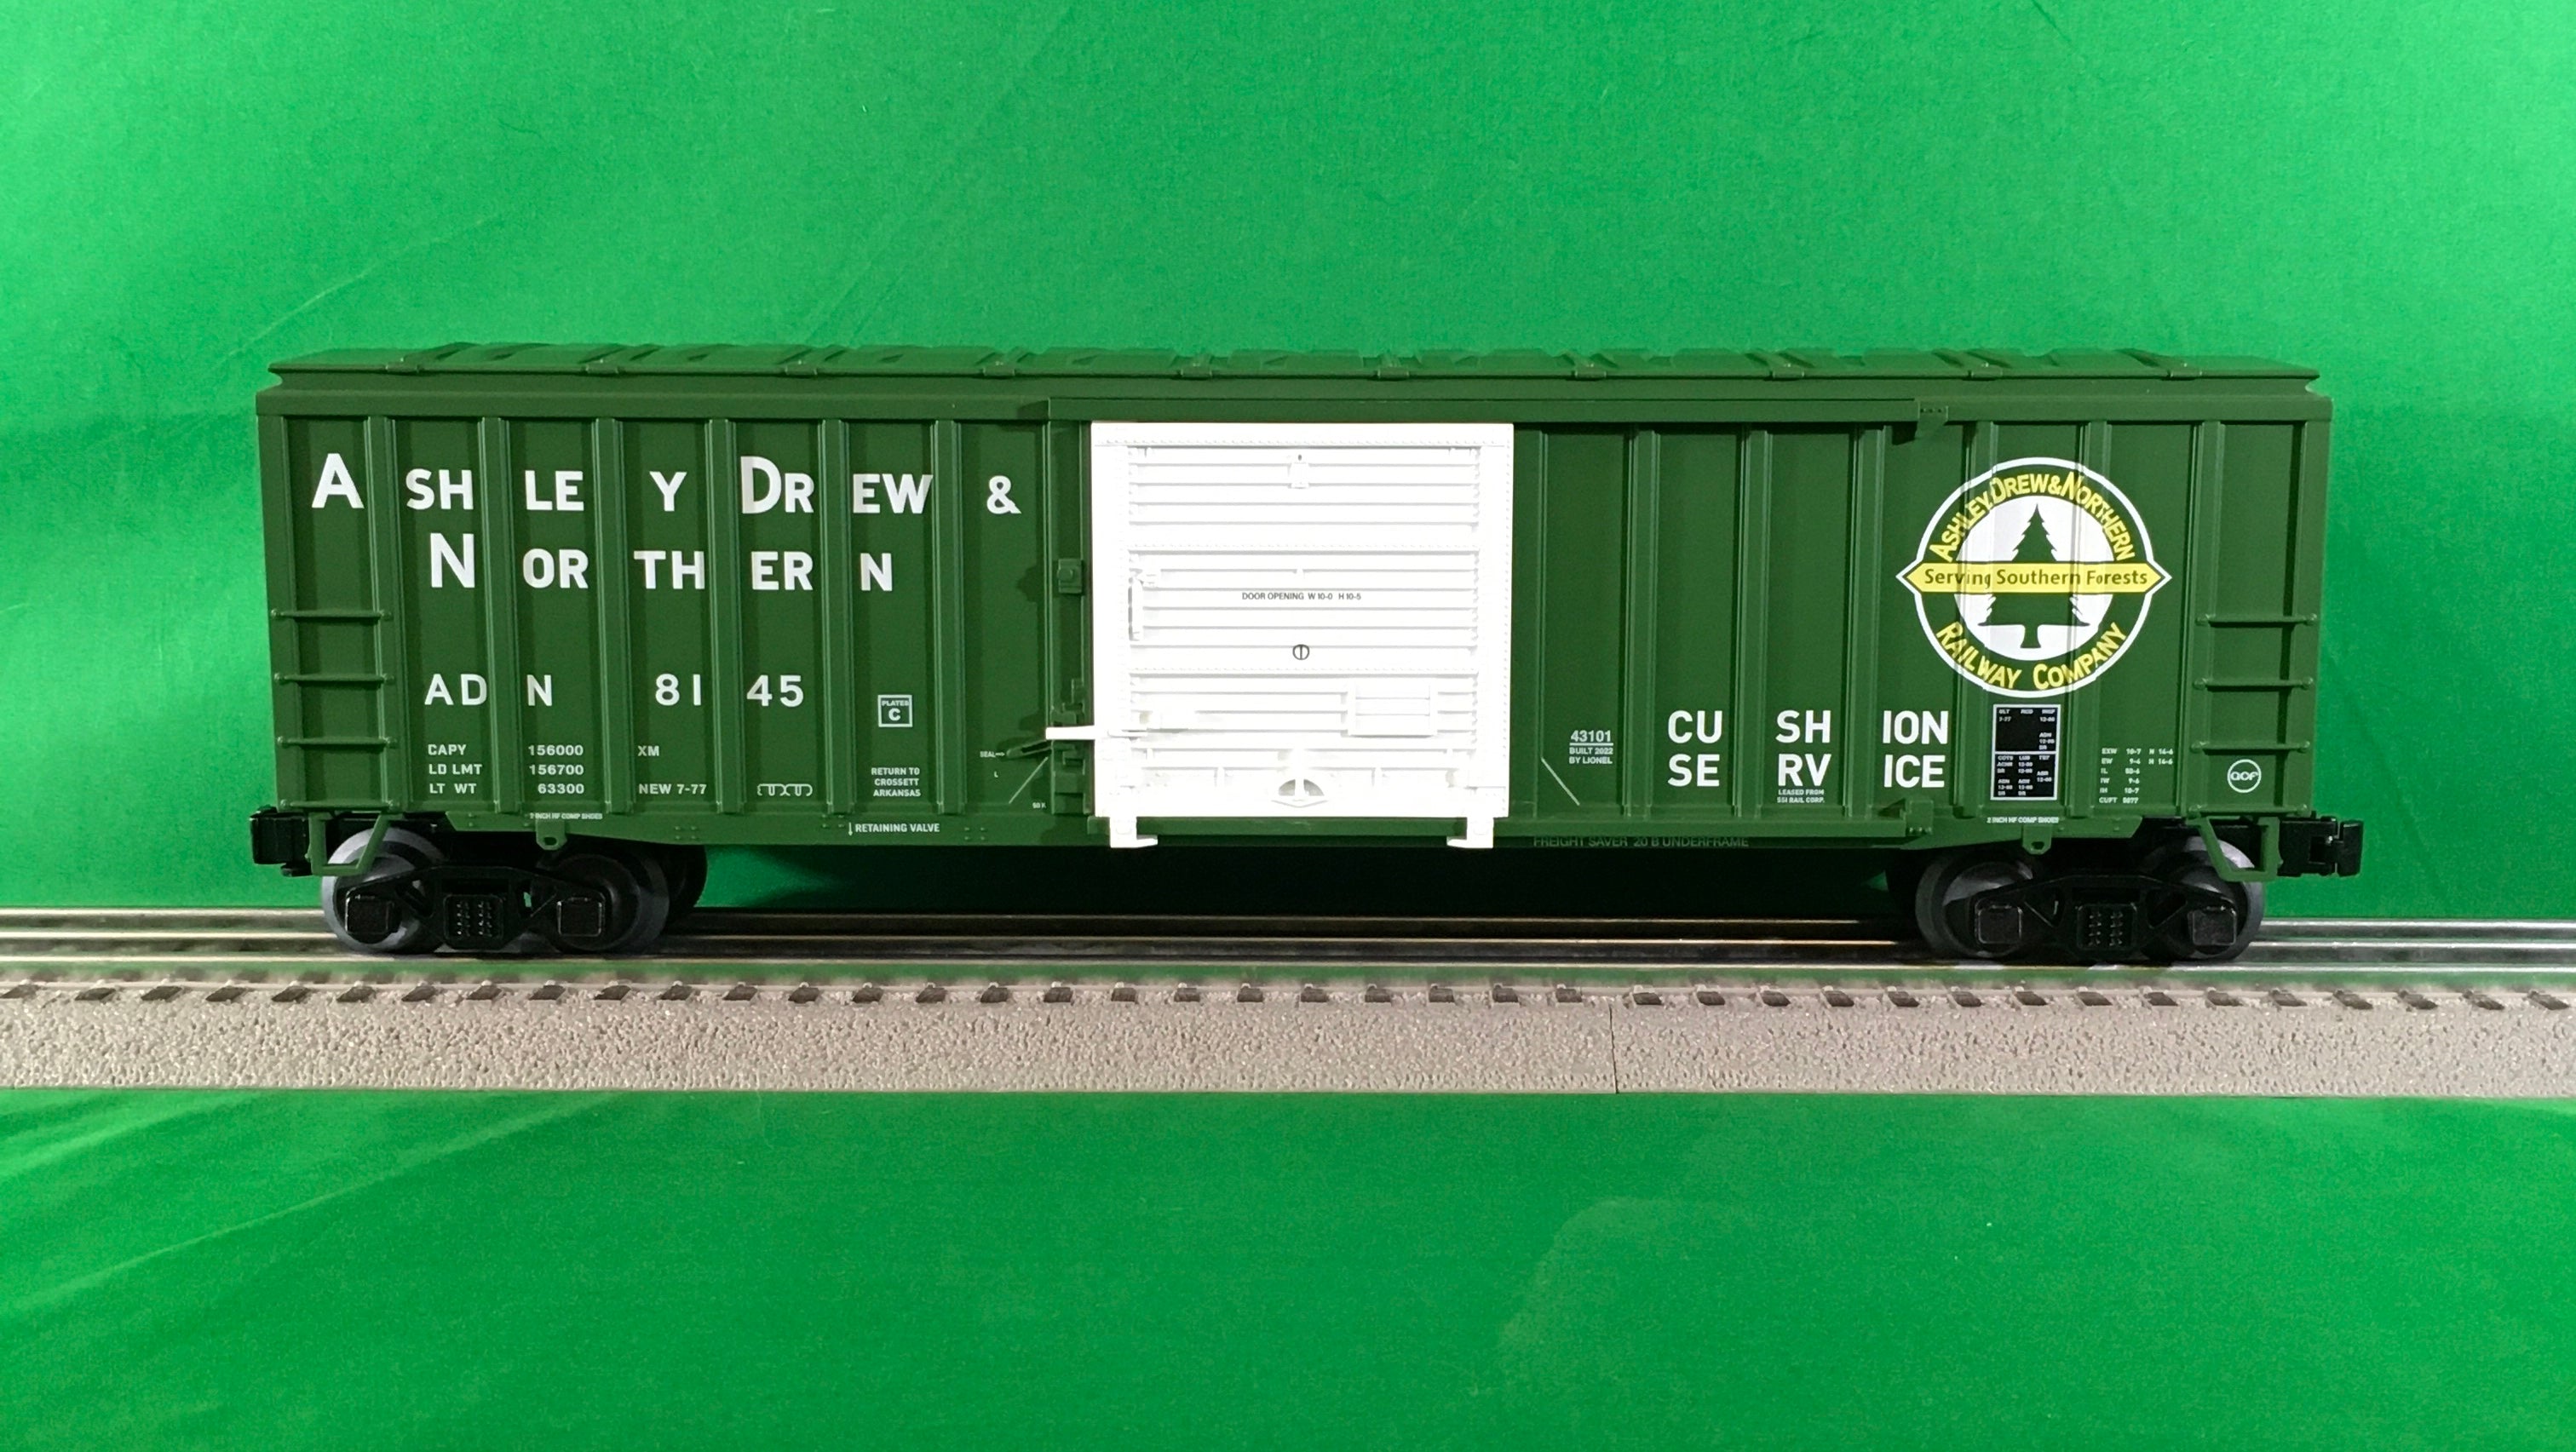 Lionel 2243102 - Modern Boxcar "Ashley Drew & Northern" #8145